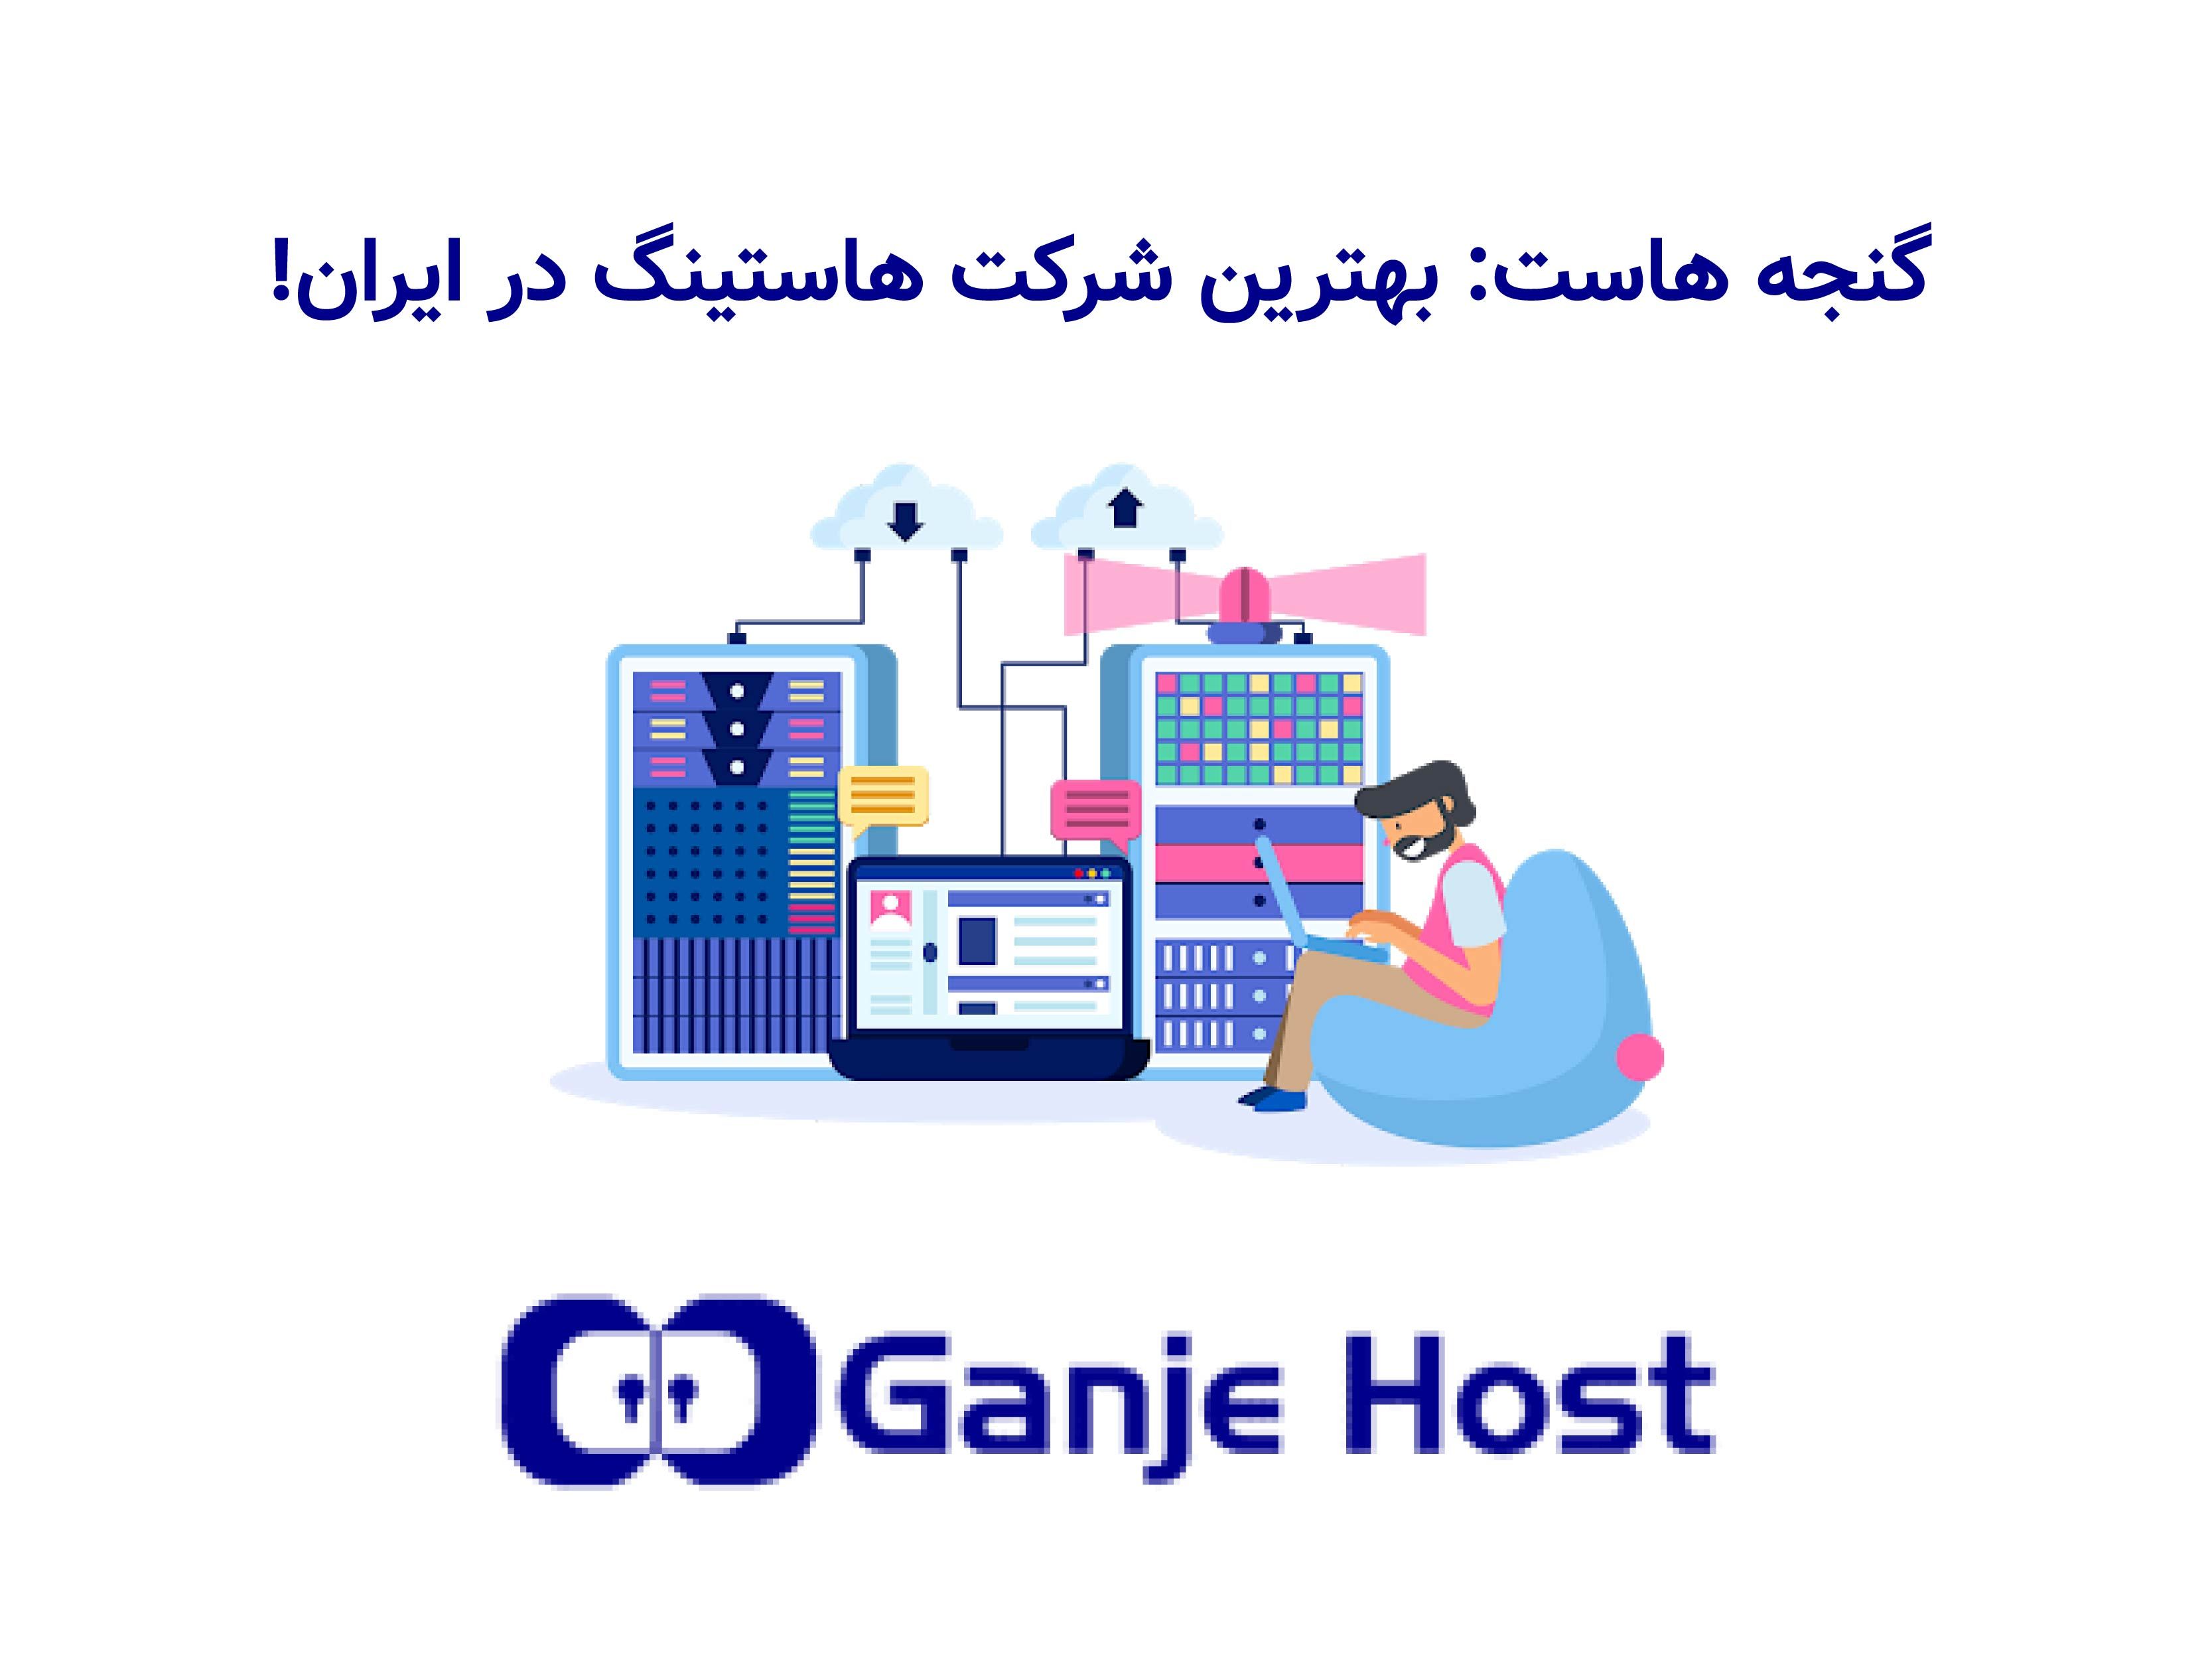 گنجه هاست: بهترین شرکت هاستینگ در ایران!